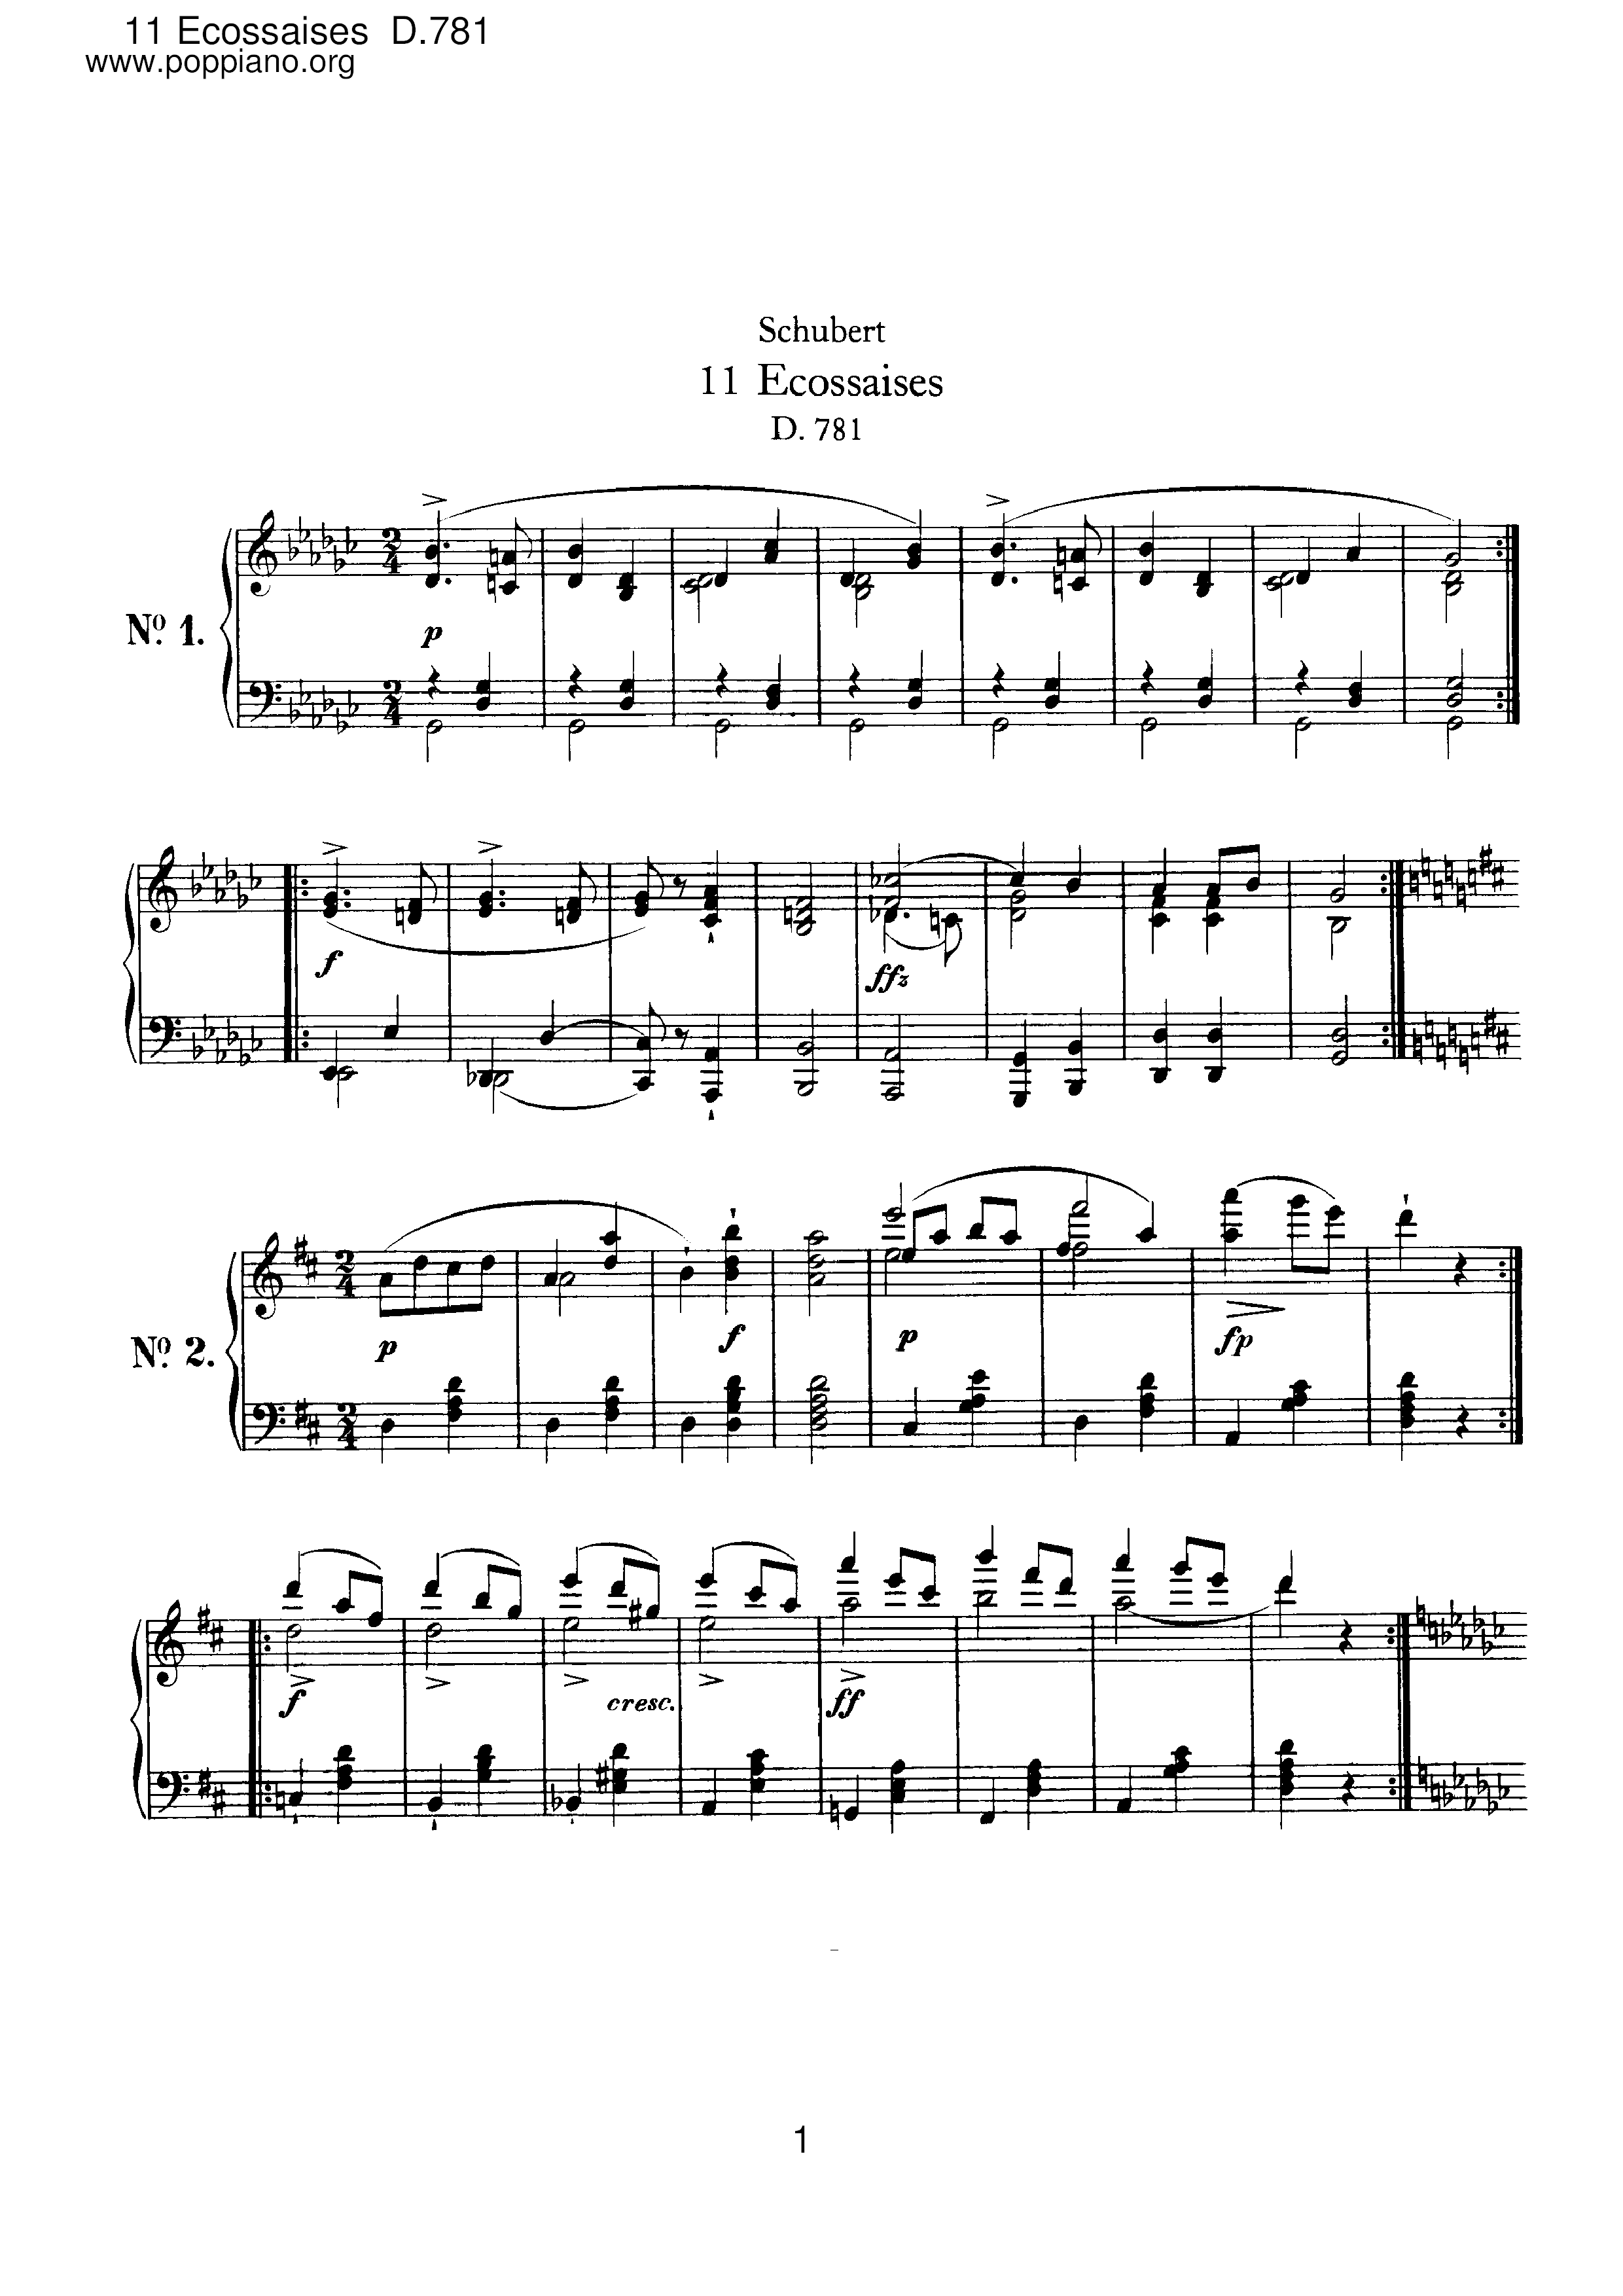 11 Ecossaises, D.781 Score